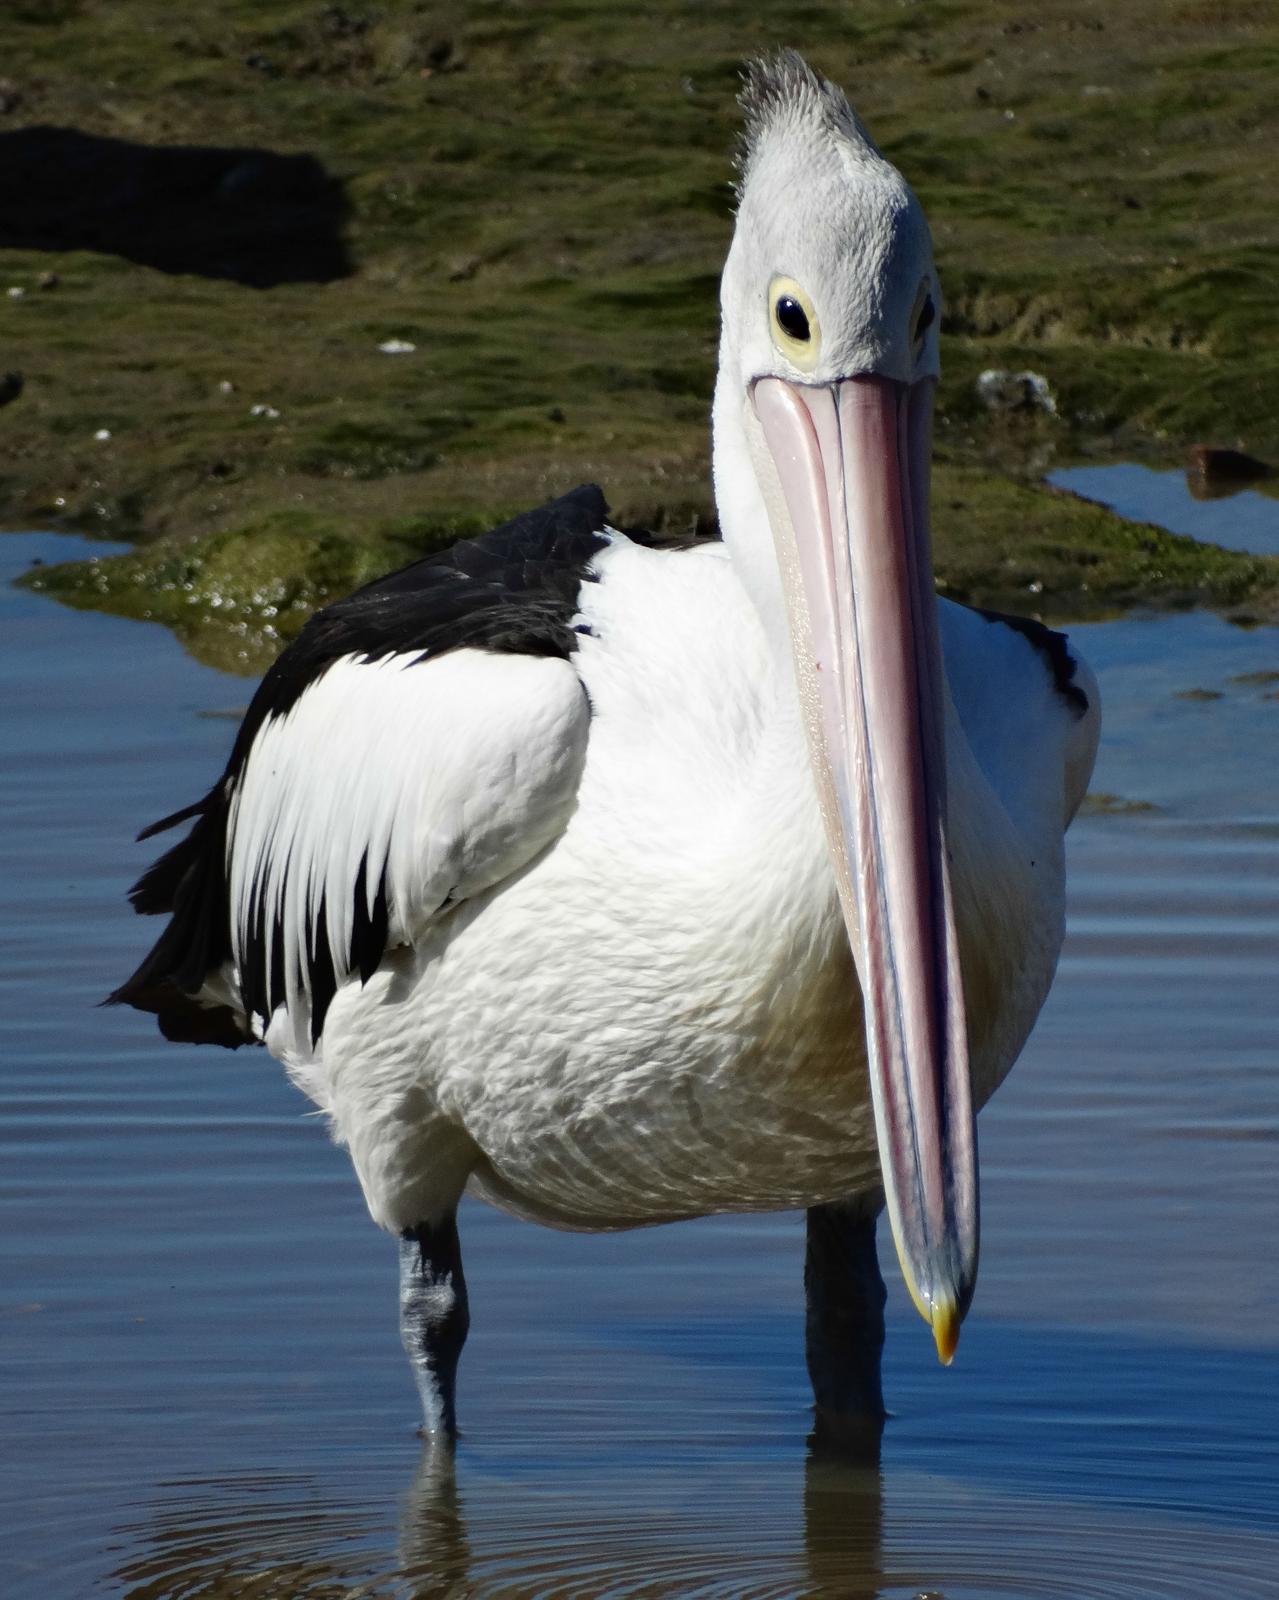 Australian Pelican Photo by Steve Percival